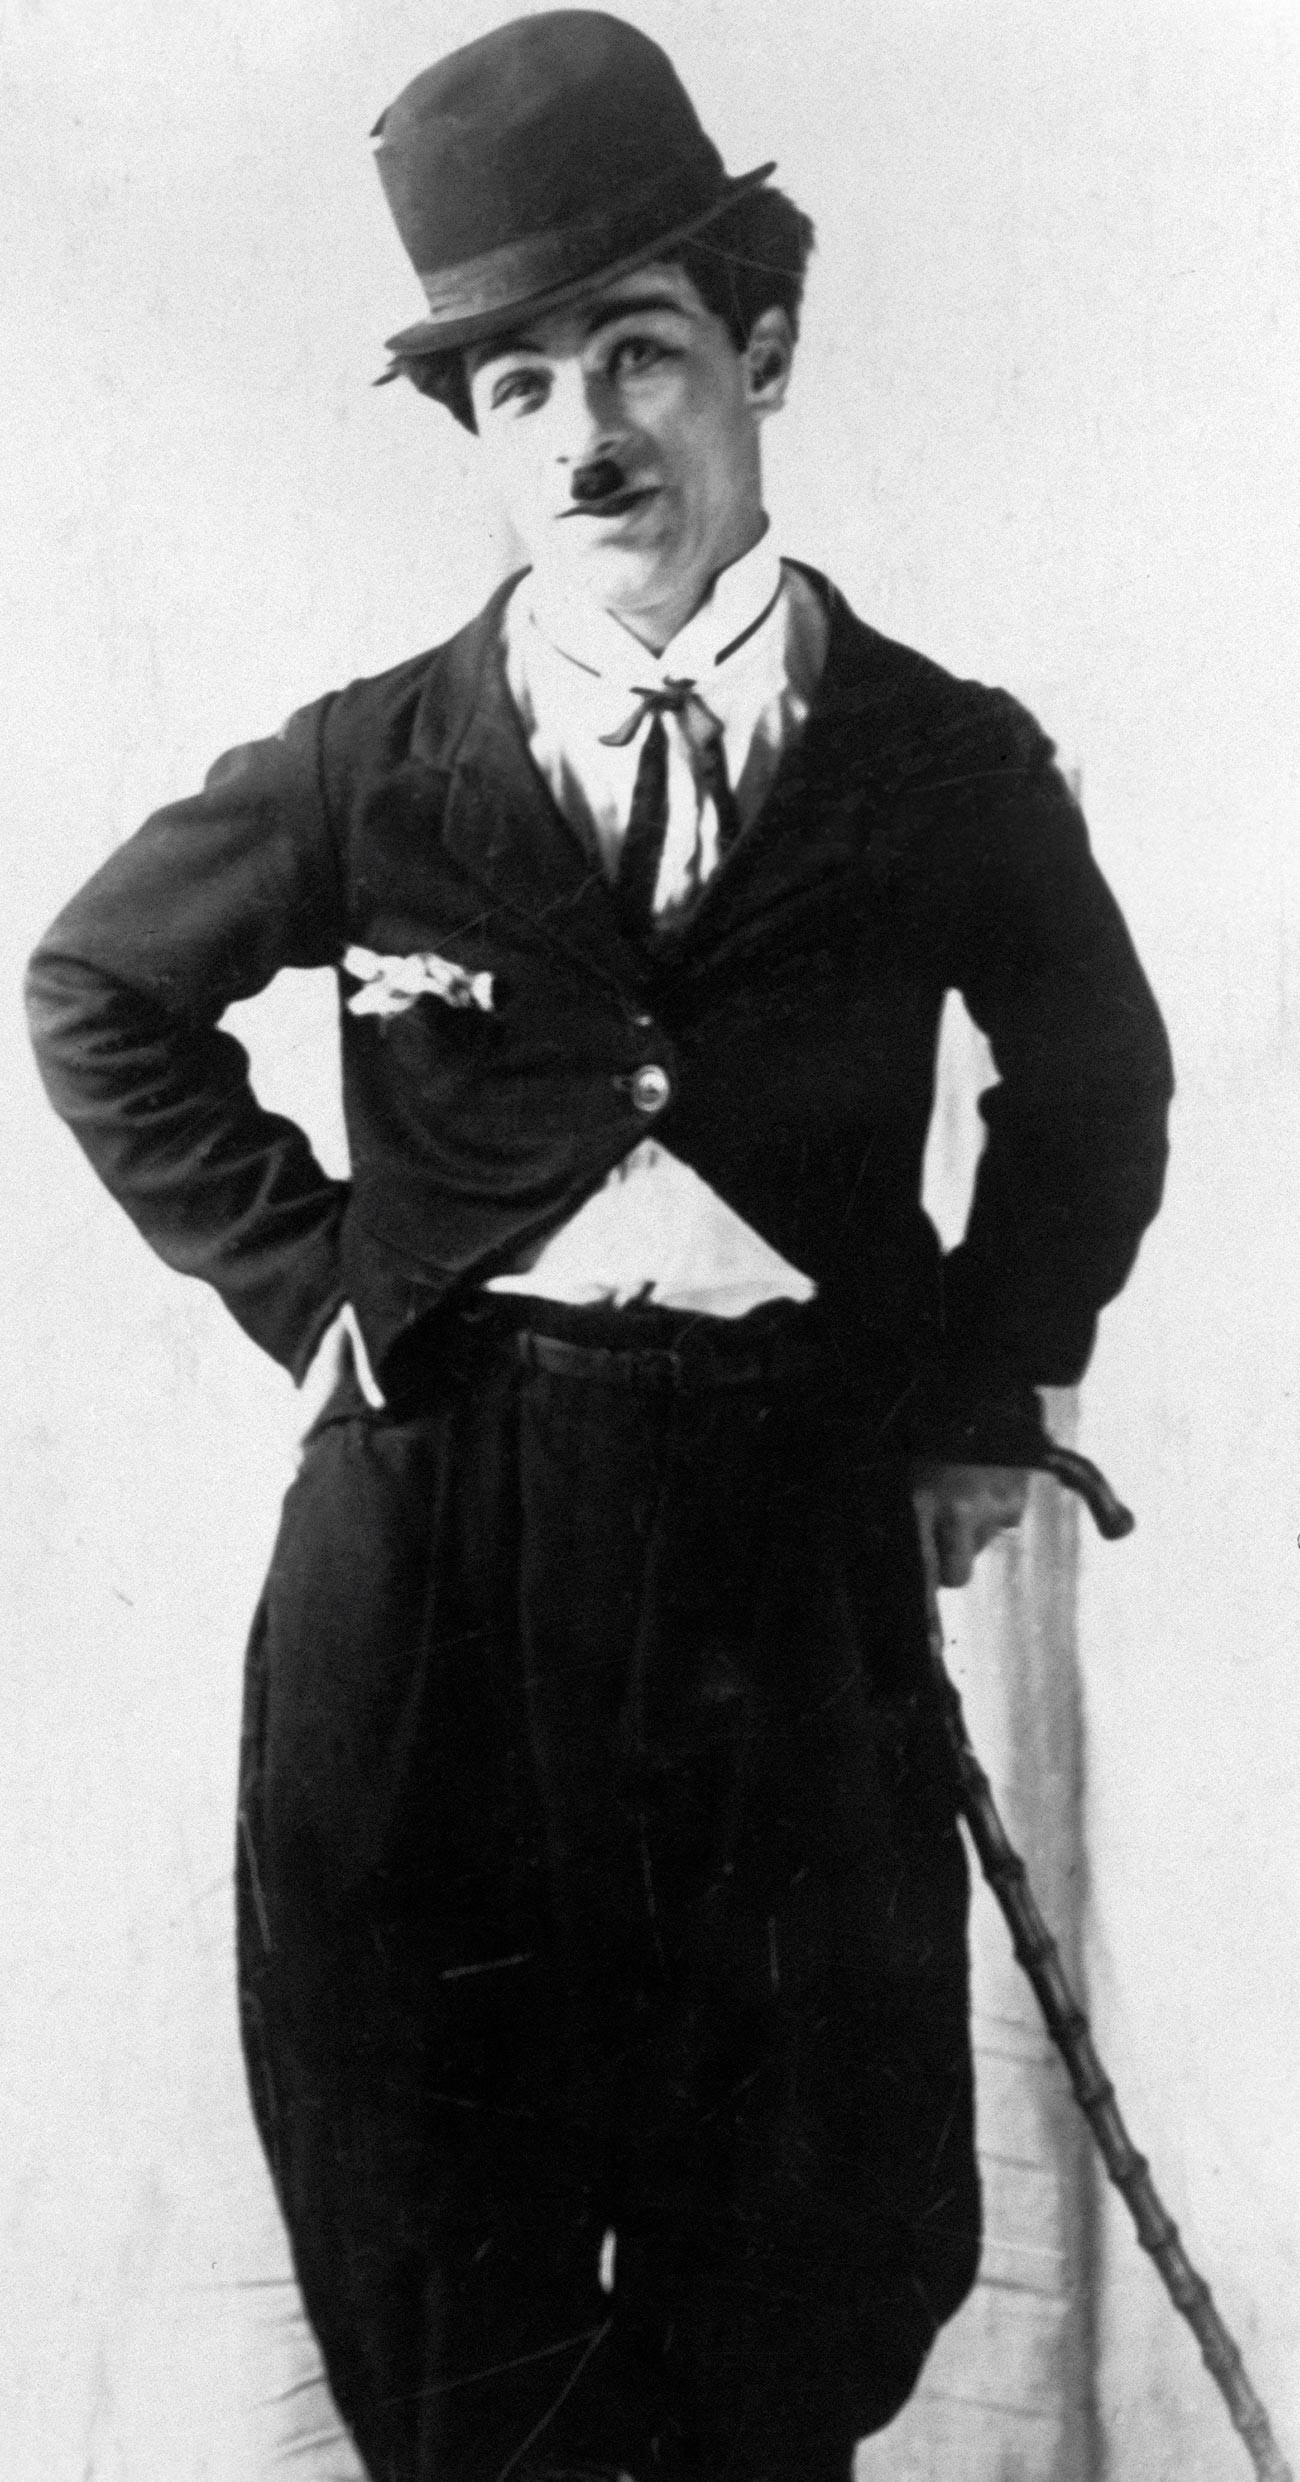 Mikhail Rumjantsev si ispirò al personaggio di Charlie Chaplin del film “Il vagabondo”